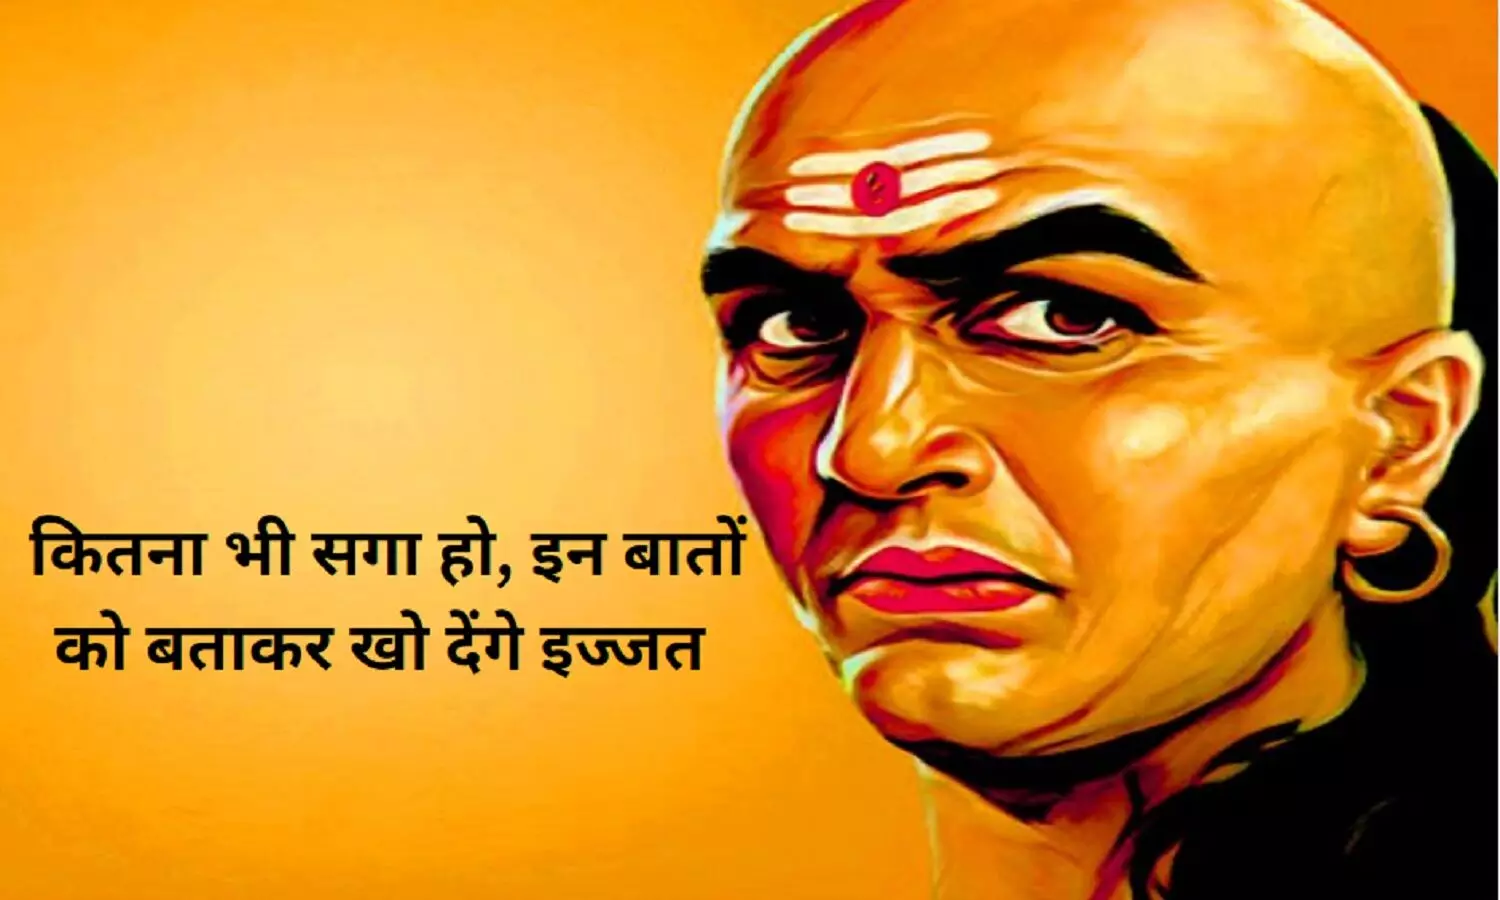 Chanakya Niti Quotes: पुरुष सपने में भी किसी से न बताएं इन बातों को, नहीं तो खो देंगे मान-सम्मान, नहीं करेगा कोई इज्जत